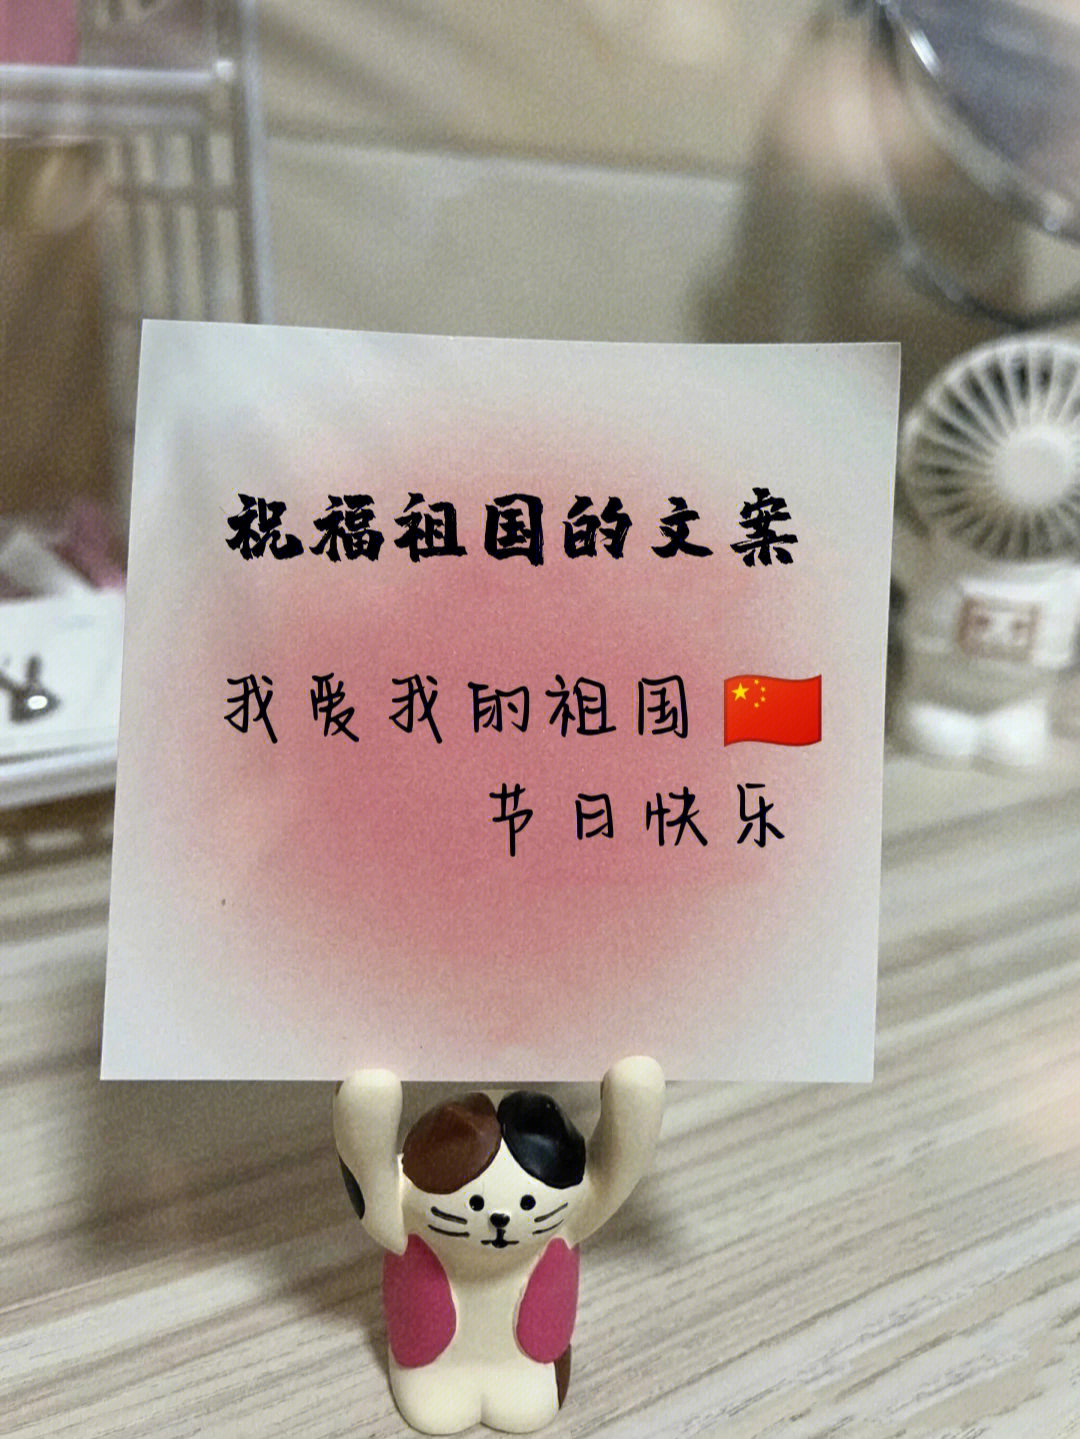 国庆节发圈的微信说说图片